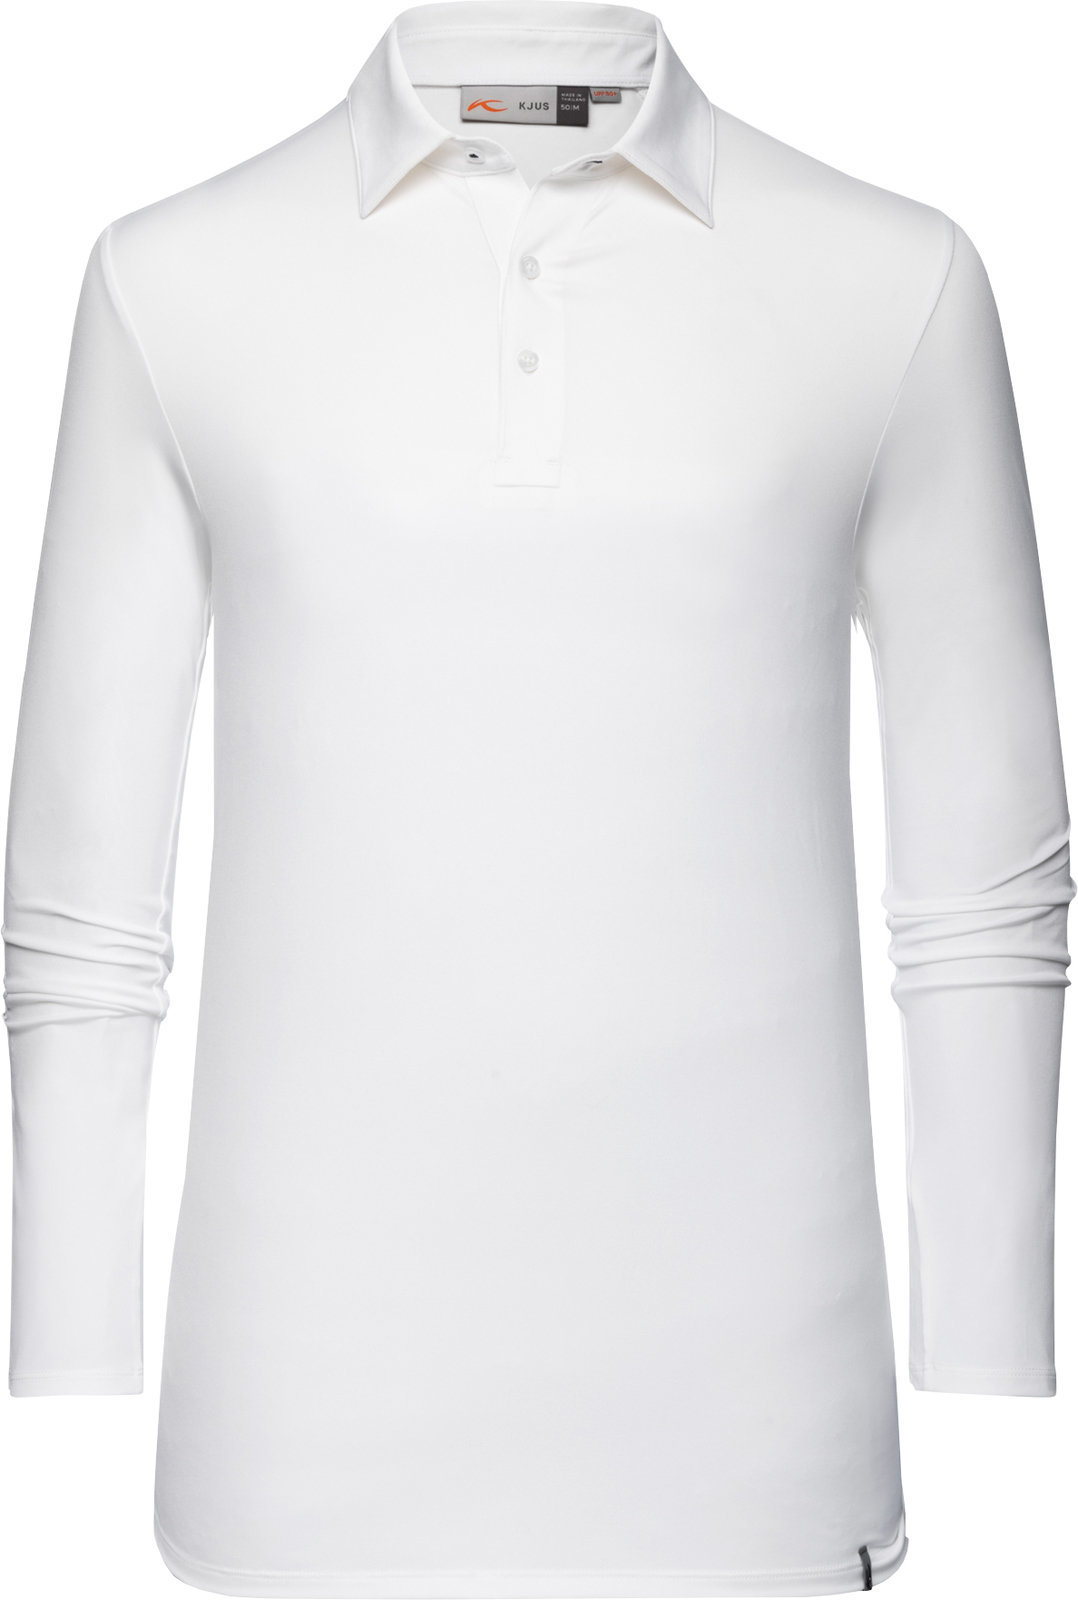 Camiseta polo Kjus Soren Solid White 52